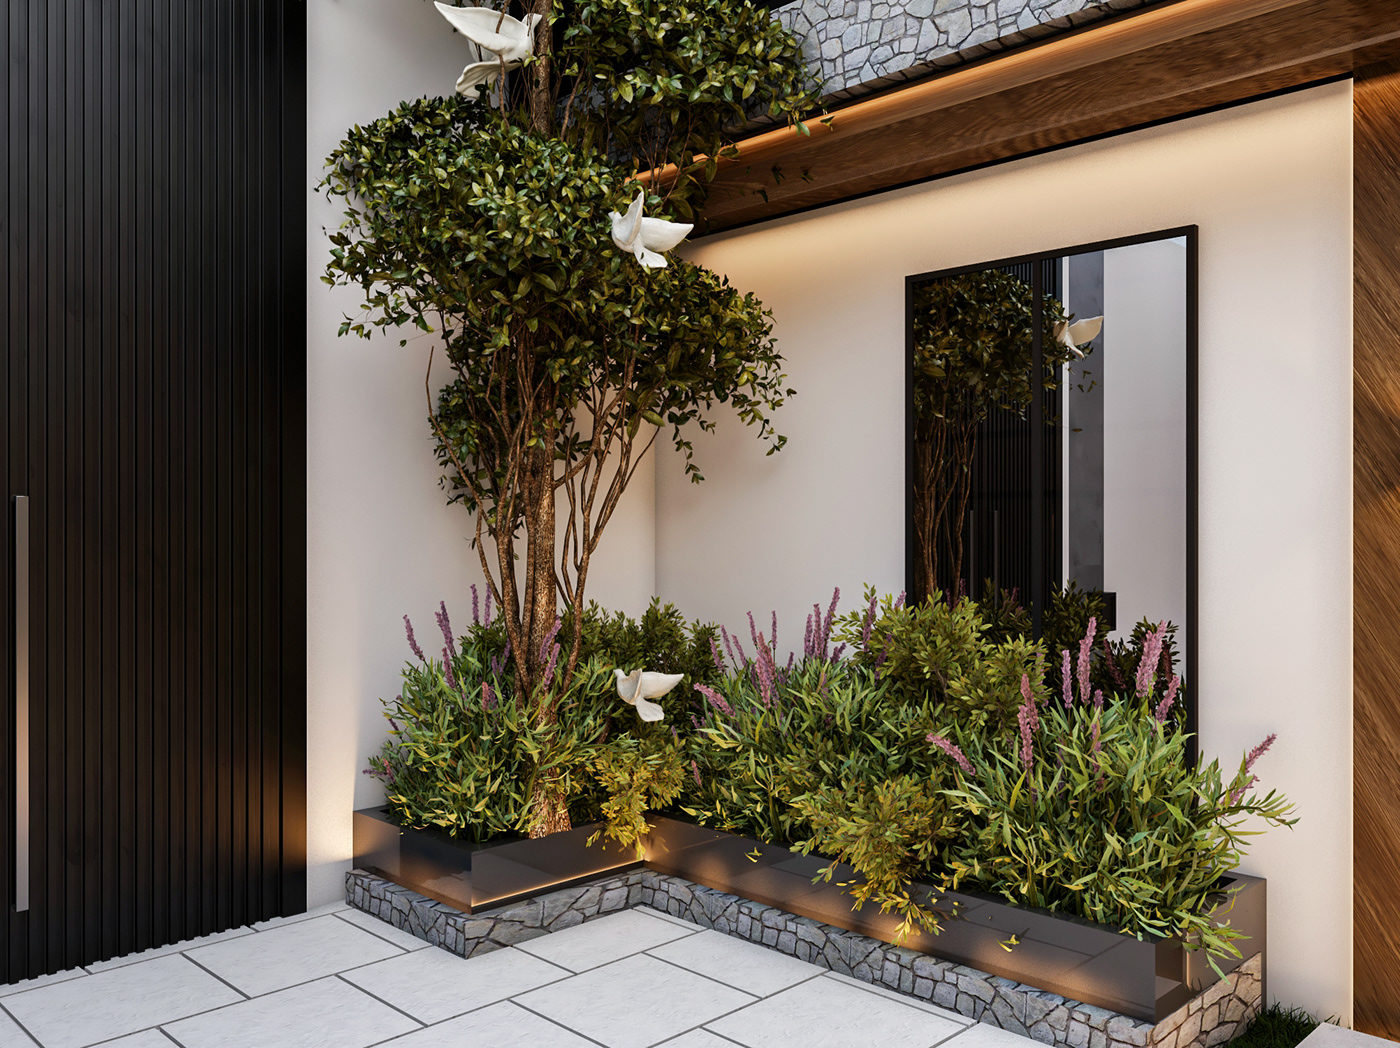 Plant Landscape exterior Render 3ds max vray architecture design